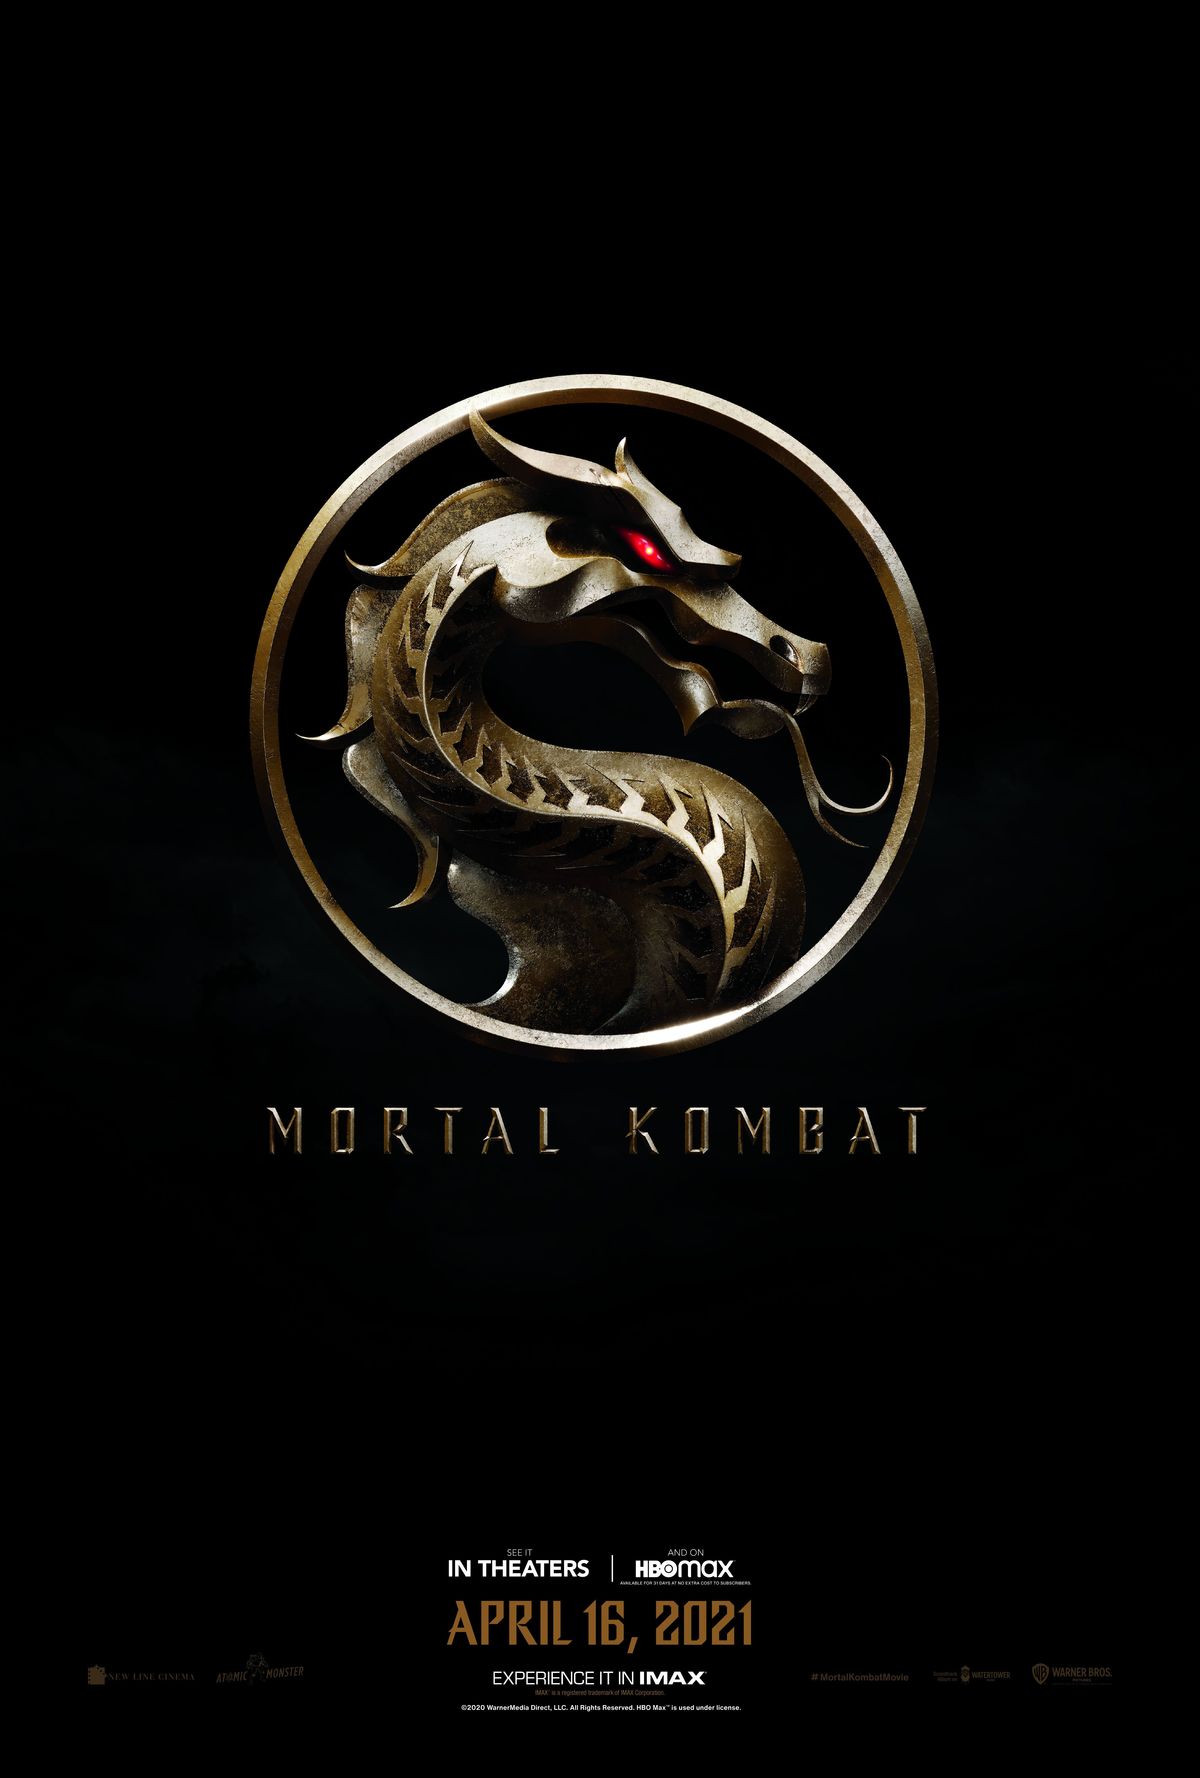 Mortal Kombat Film slipper First Teaser Poster